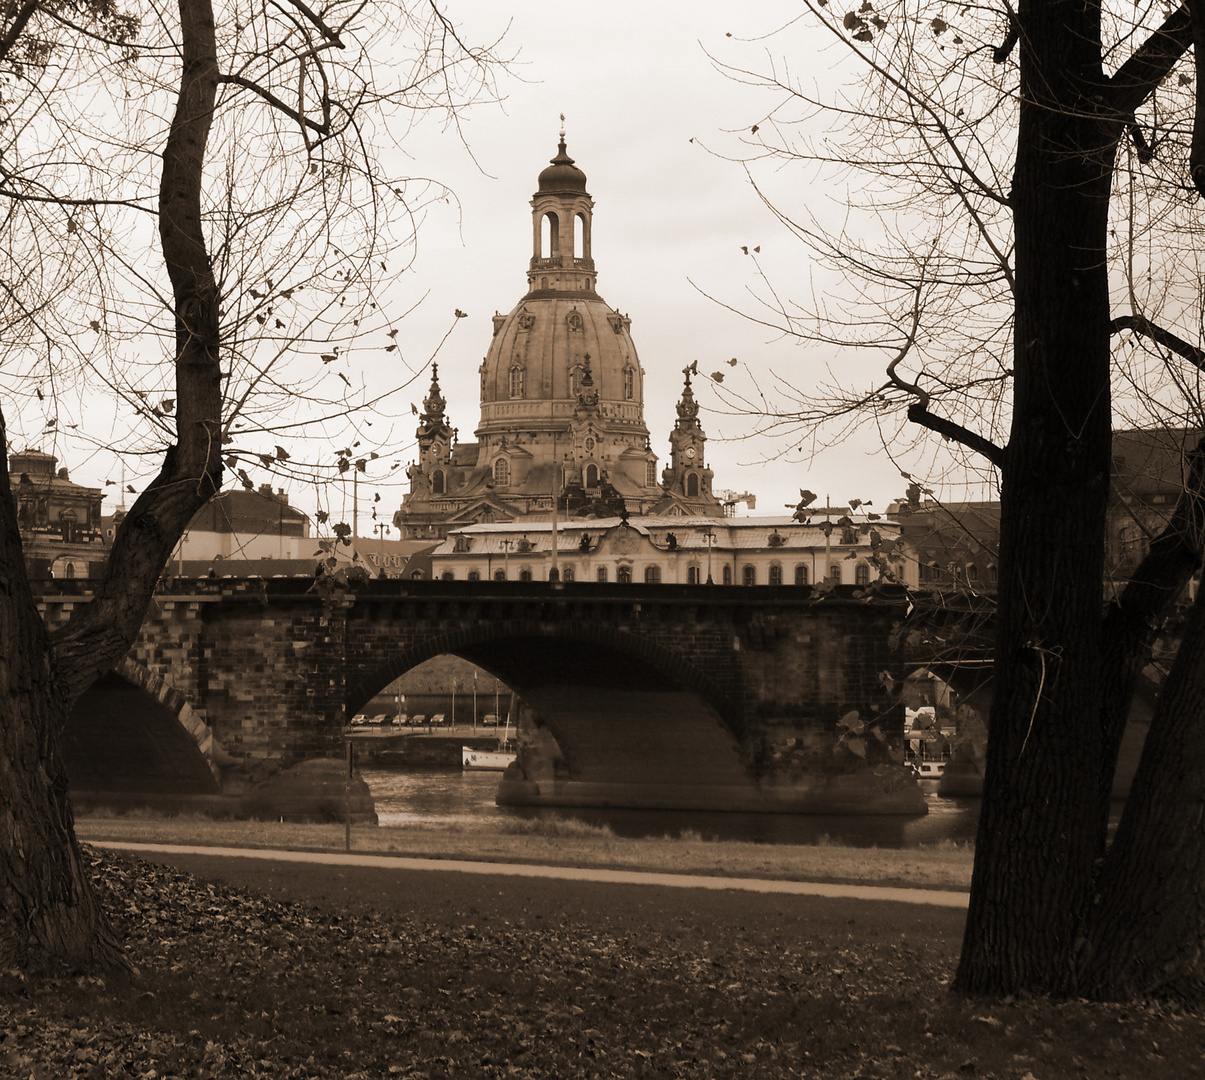 Dresden - Frauenkirche